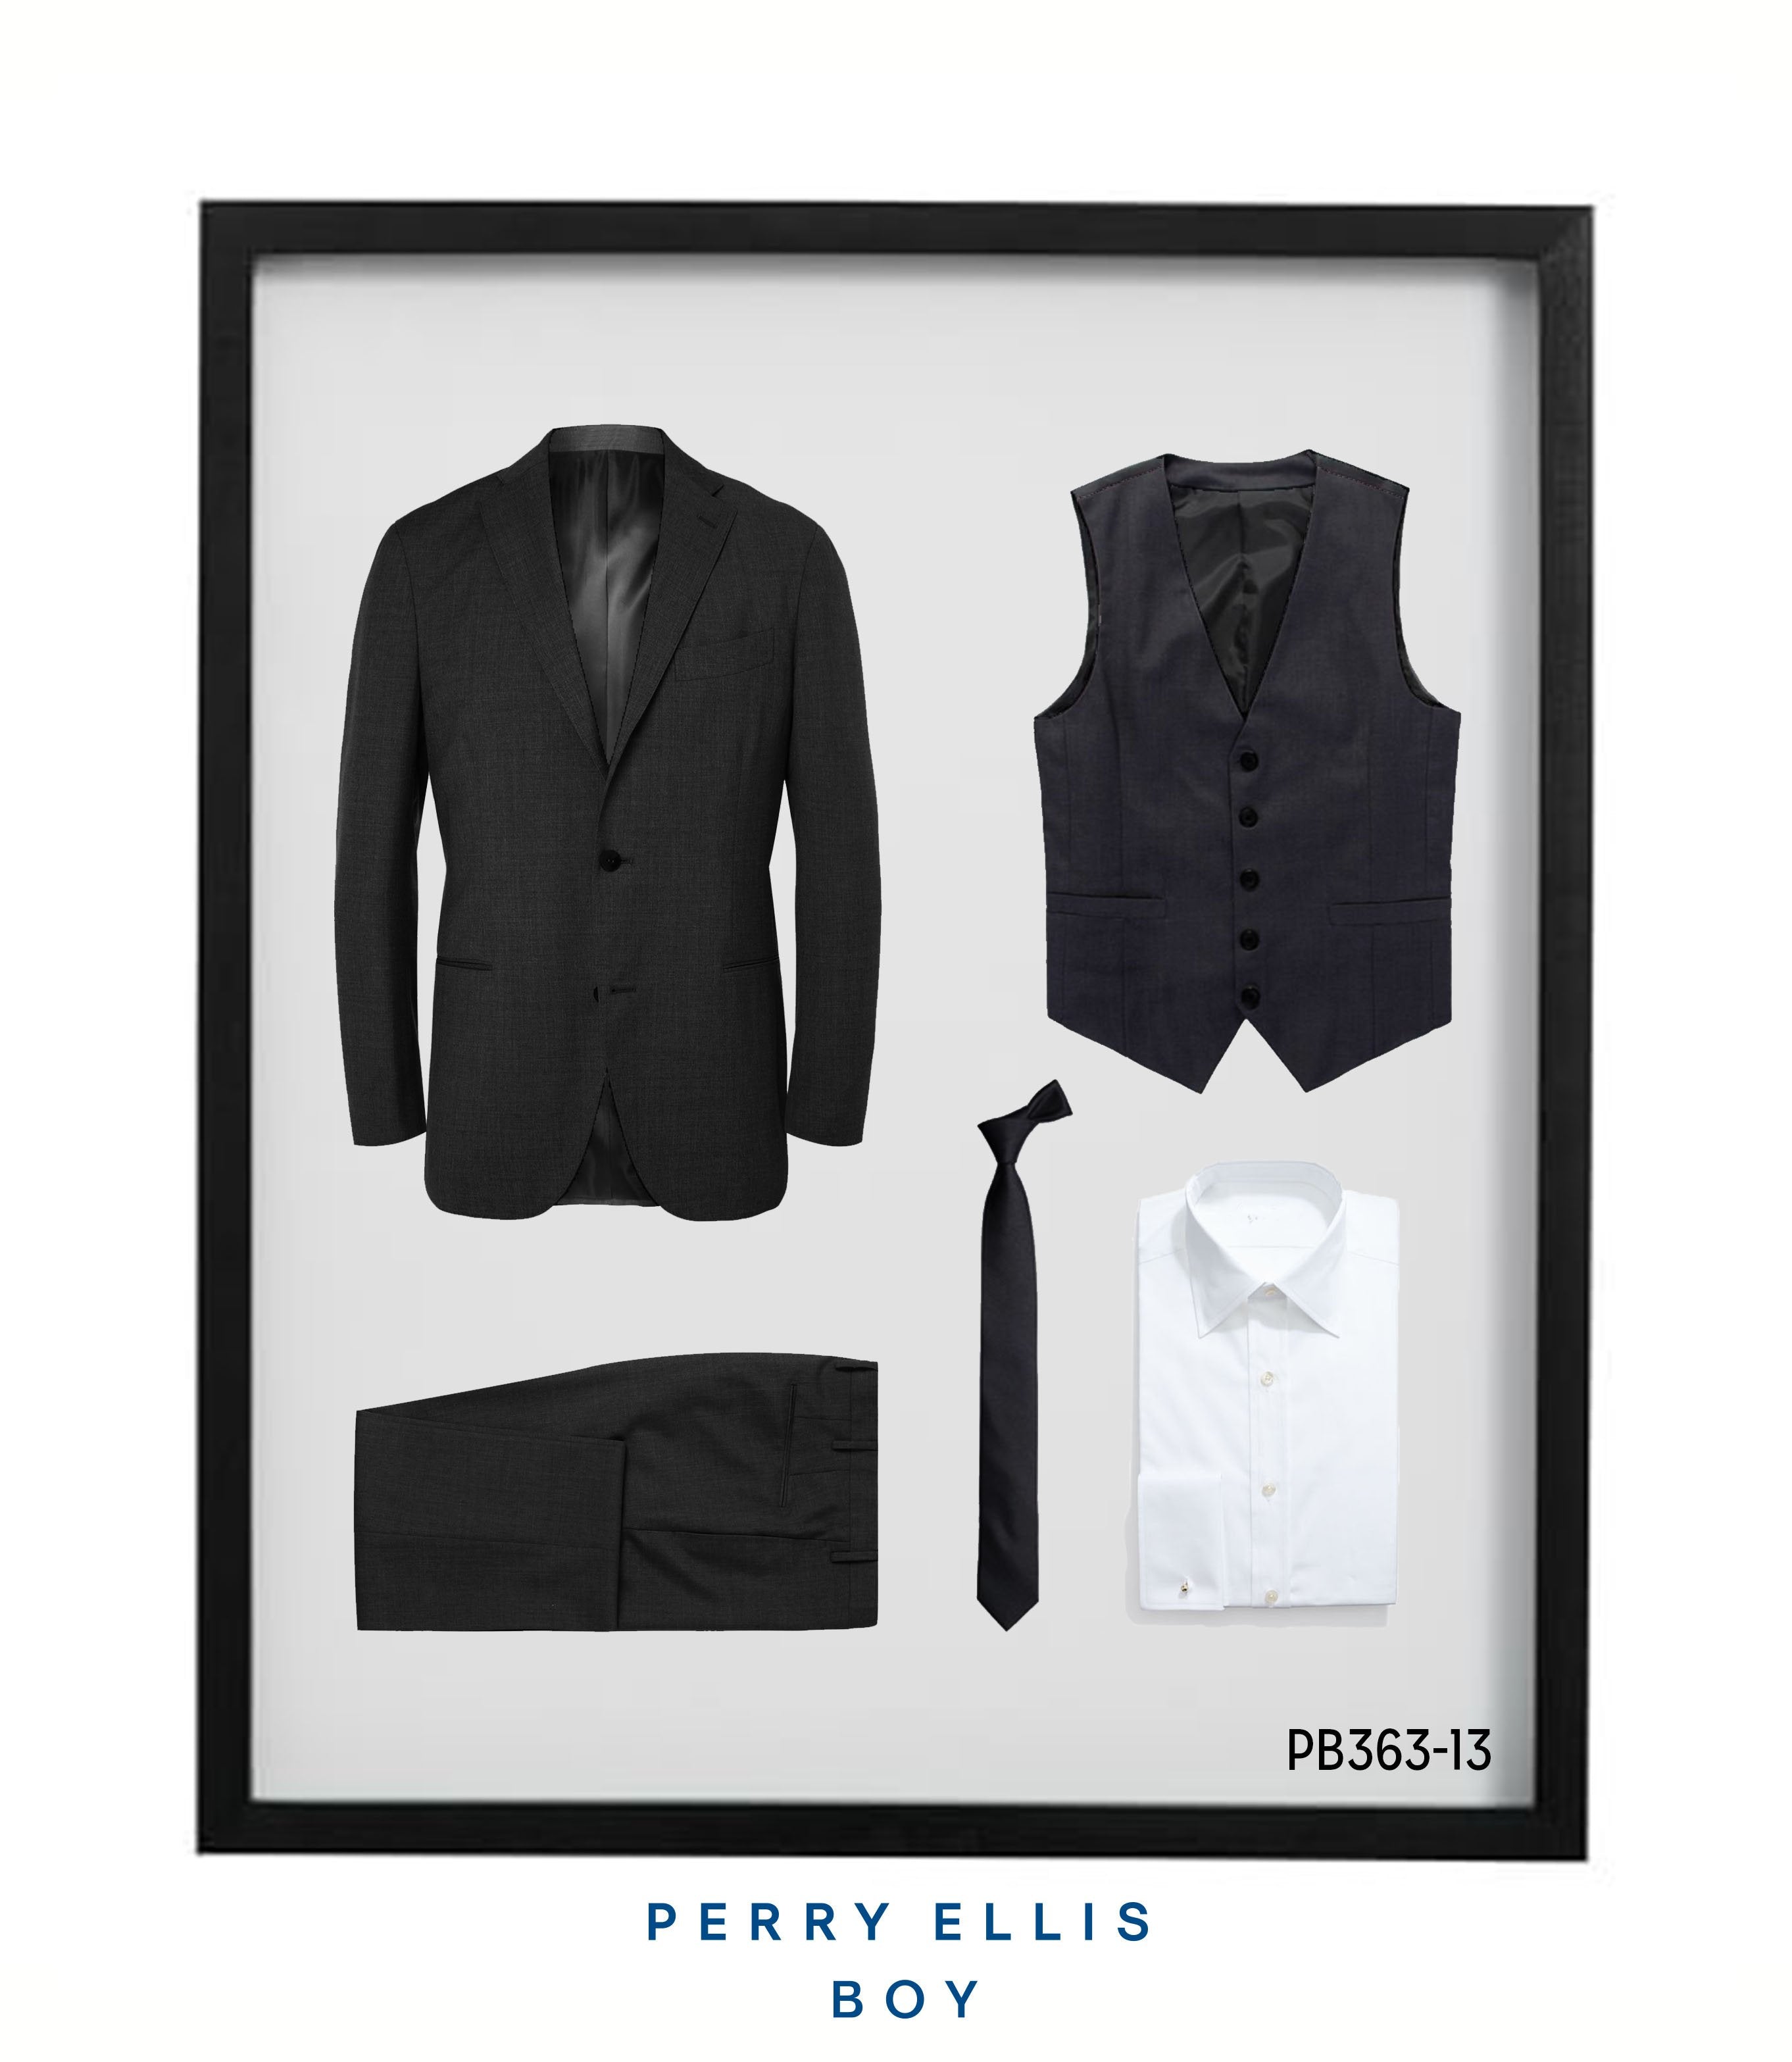 Perry Ellis Boys Suit Dk Grey Suits For Boy's